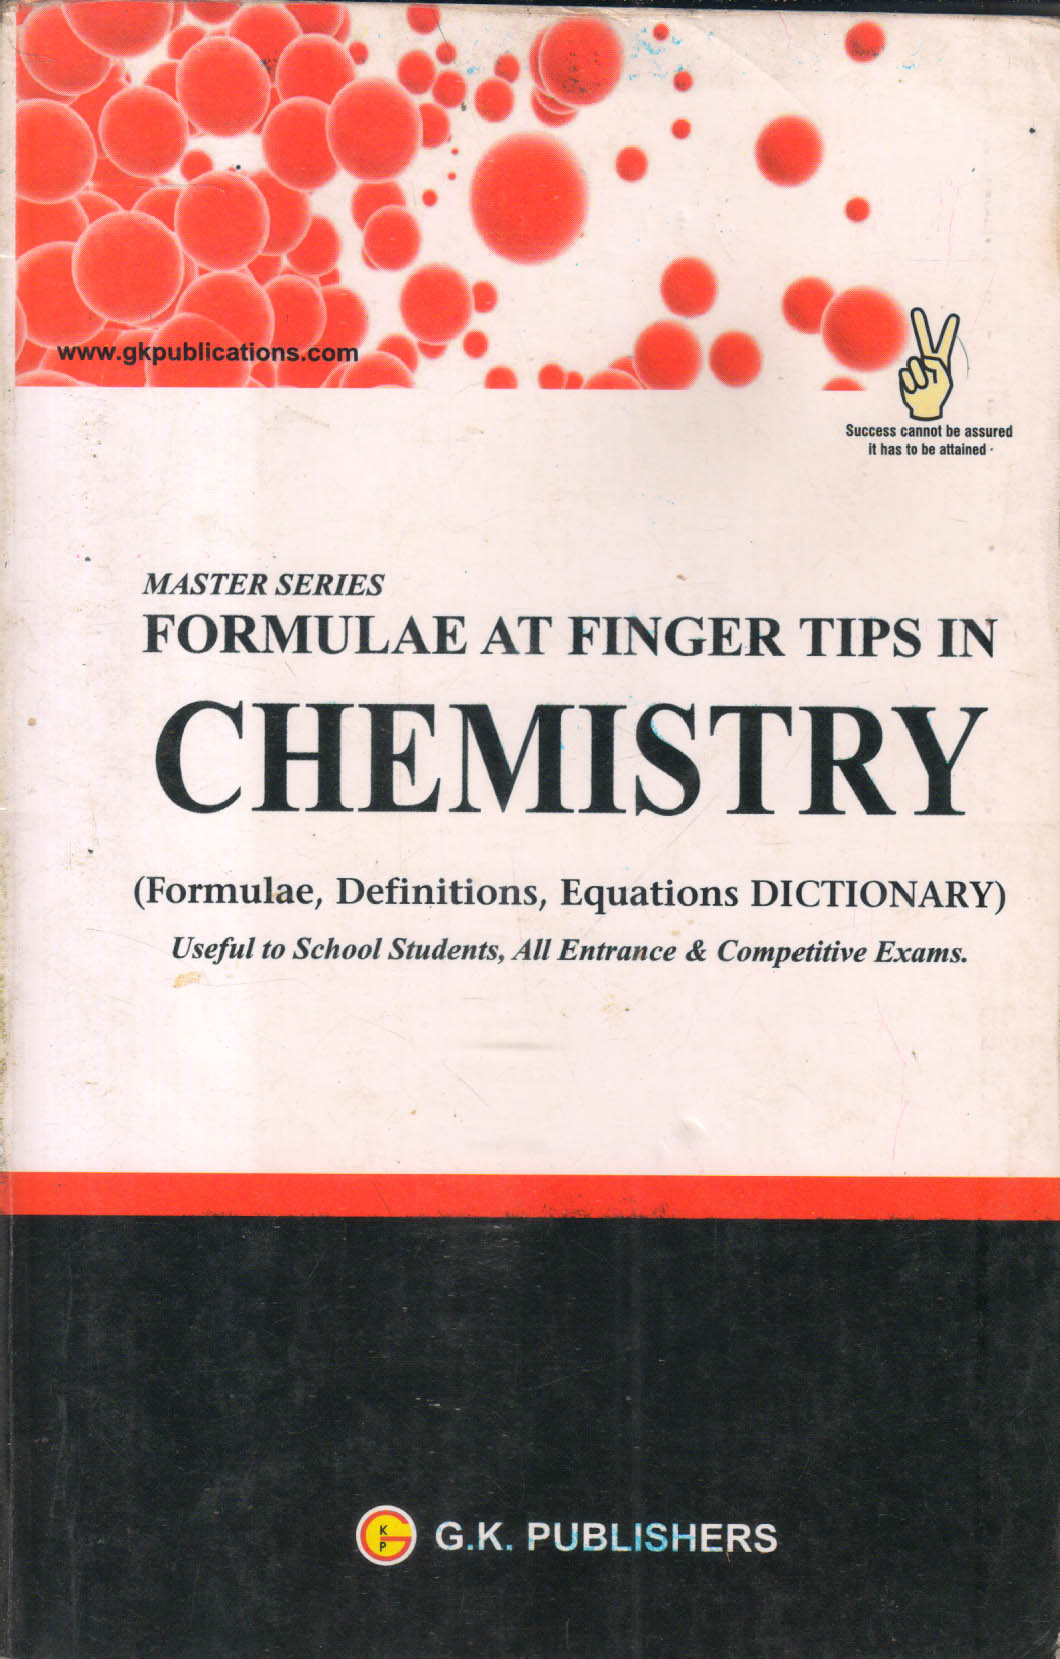 Formula at Finger Tips in CHEMISTRY